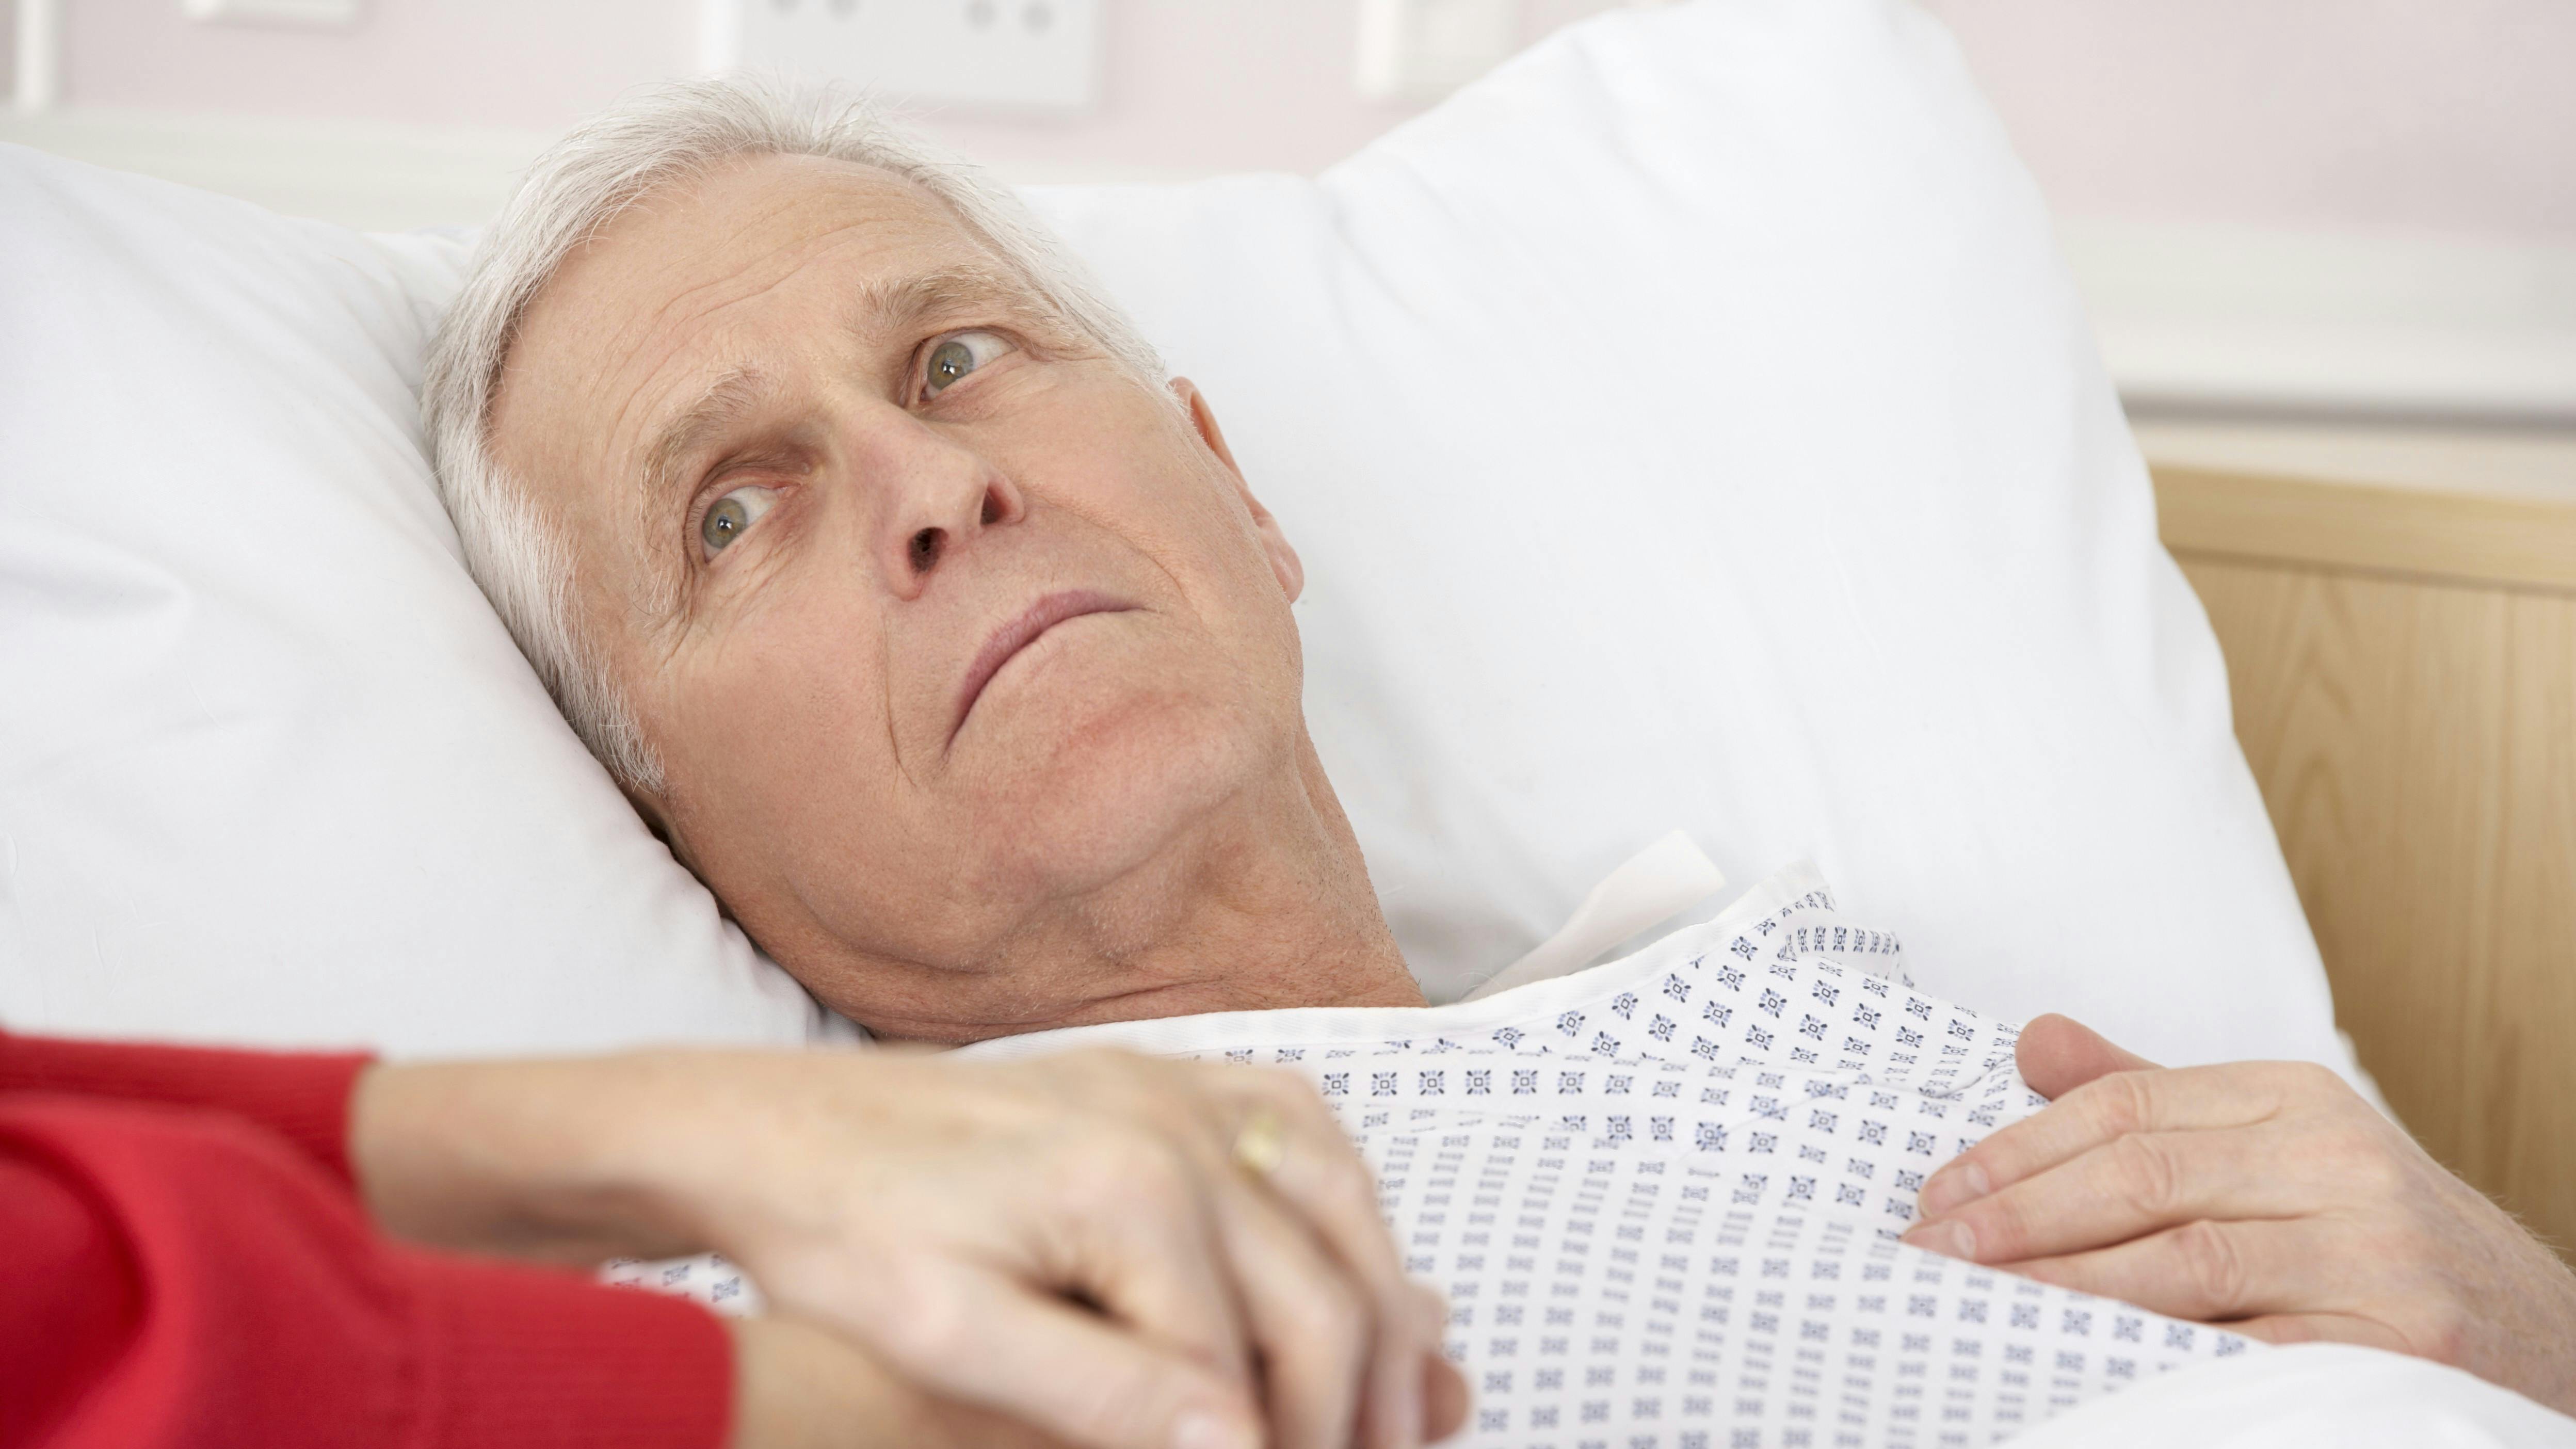 Ældre mand ligger syg i hospitalsseng, mens han holder sin kone i hånden